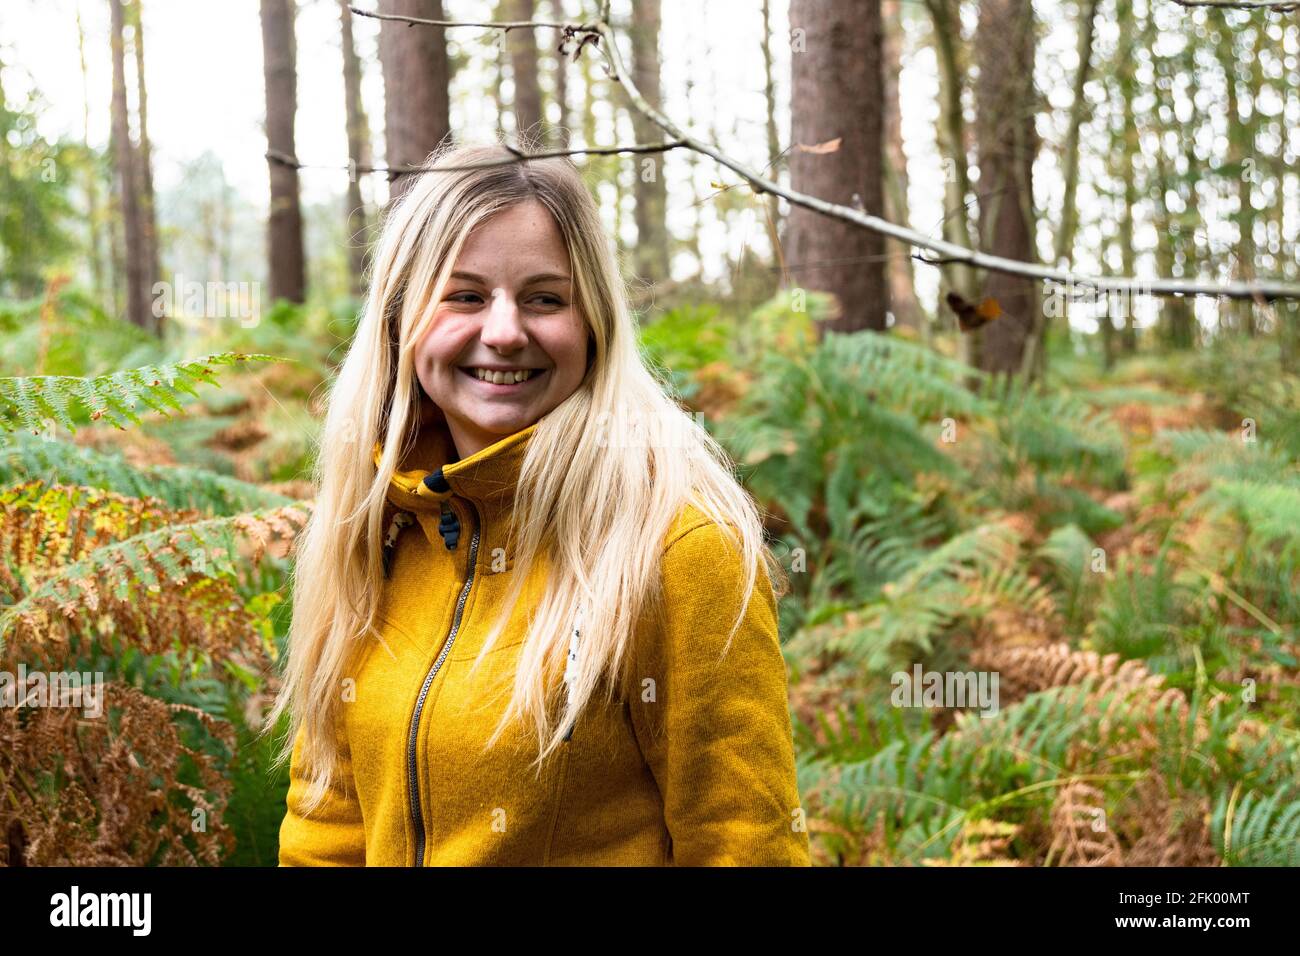 Blonde Frau in gelber Jacke, die durch eine Waldlichtung geht Mit Farn überwuchert Stockfoto